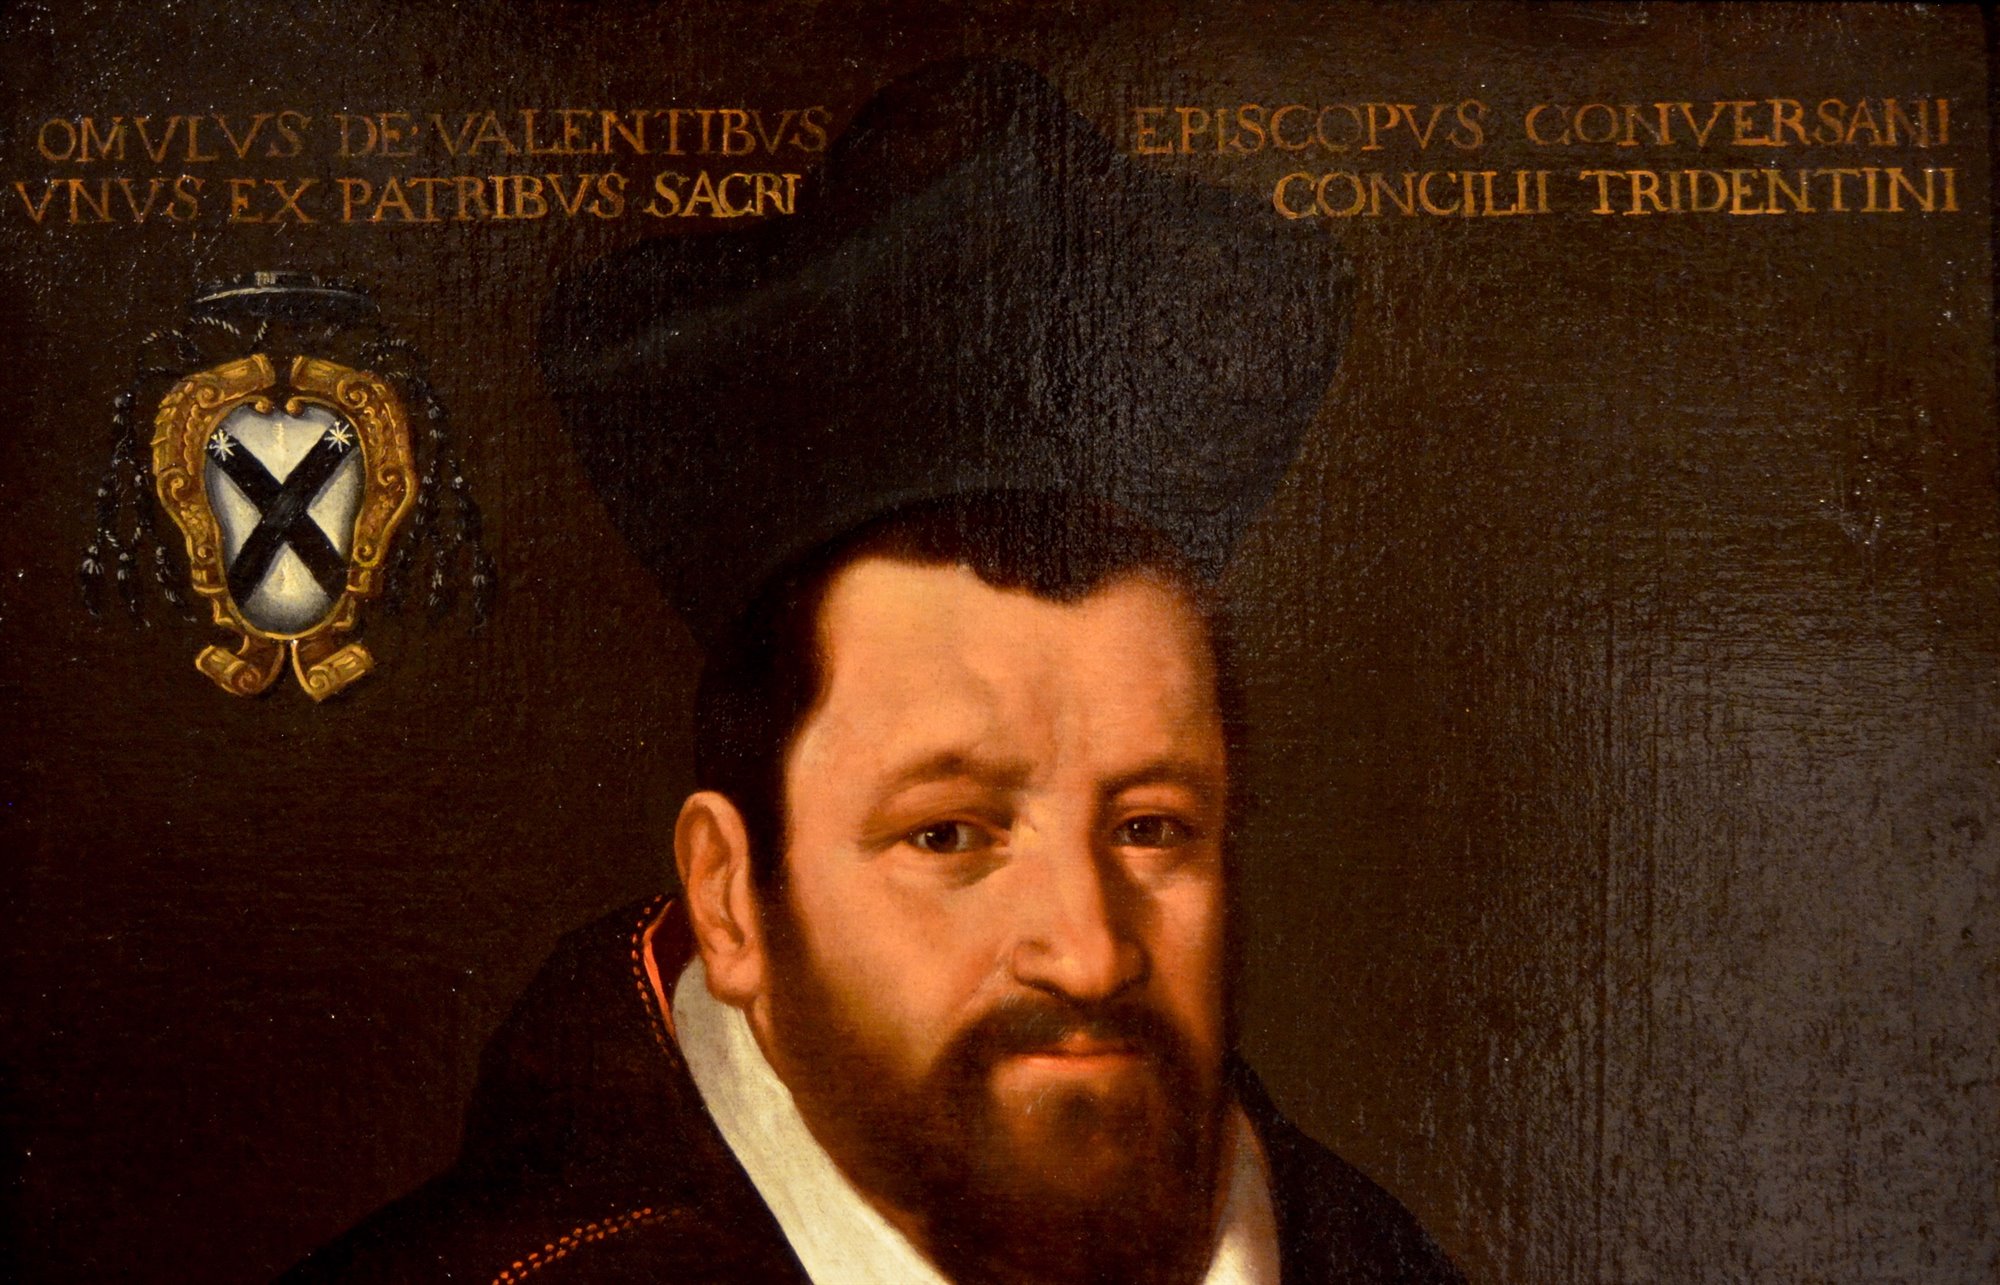 Ritratto del vescovo Romolo Valenti di Trevi (Trevi 1522 - 1579)